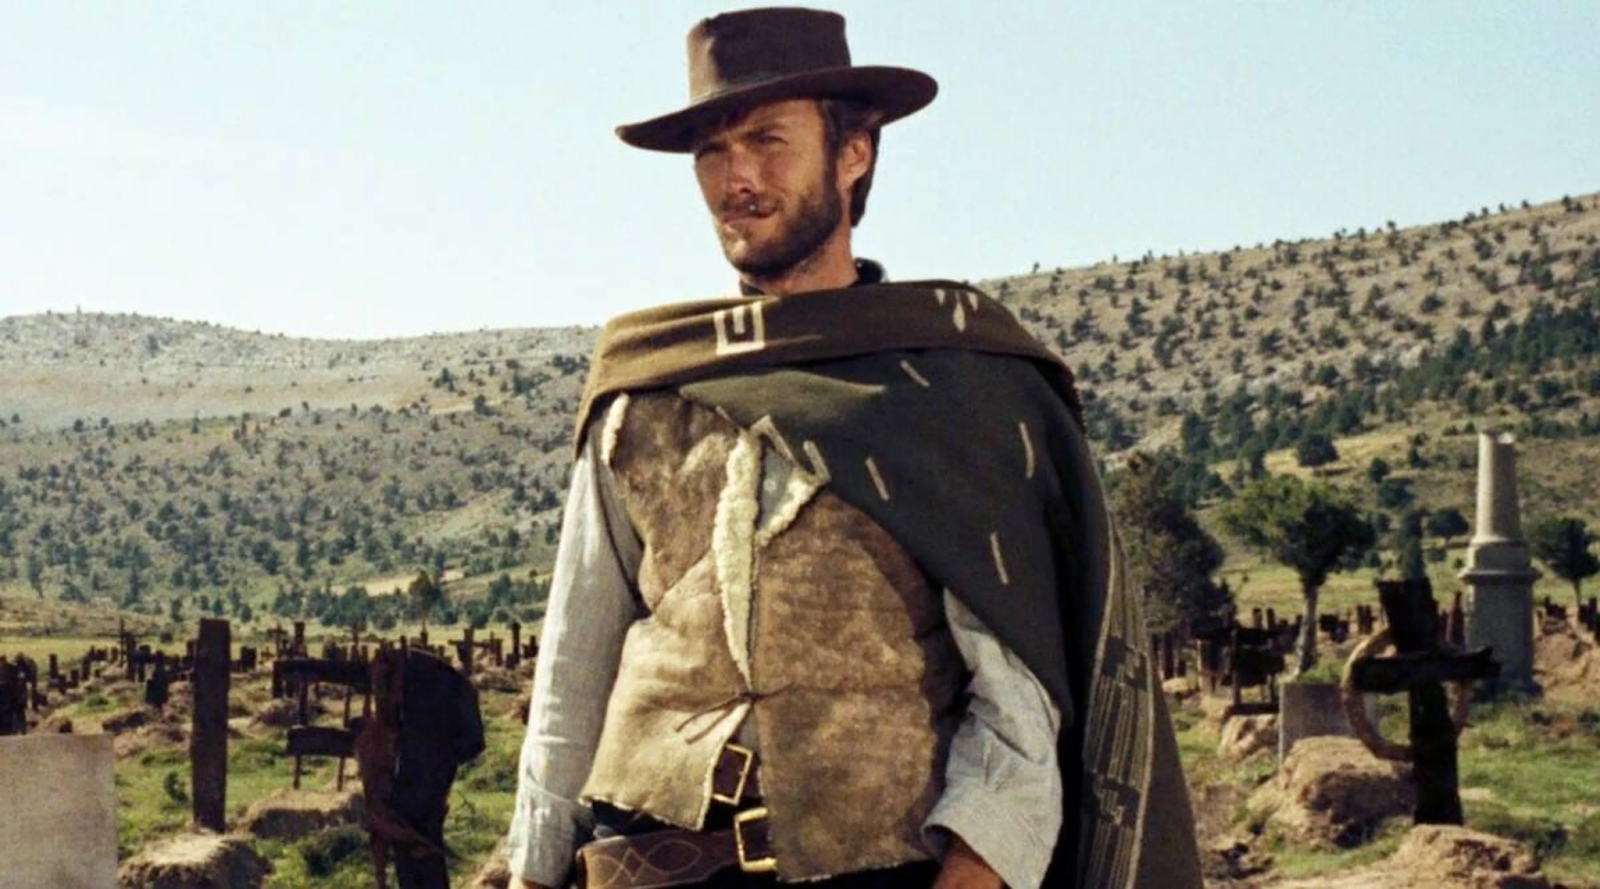 Clint Eastwood en una escena clásica de una película del género western, con su característico sombrero, poncho y fondo de un paisaje desértico.